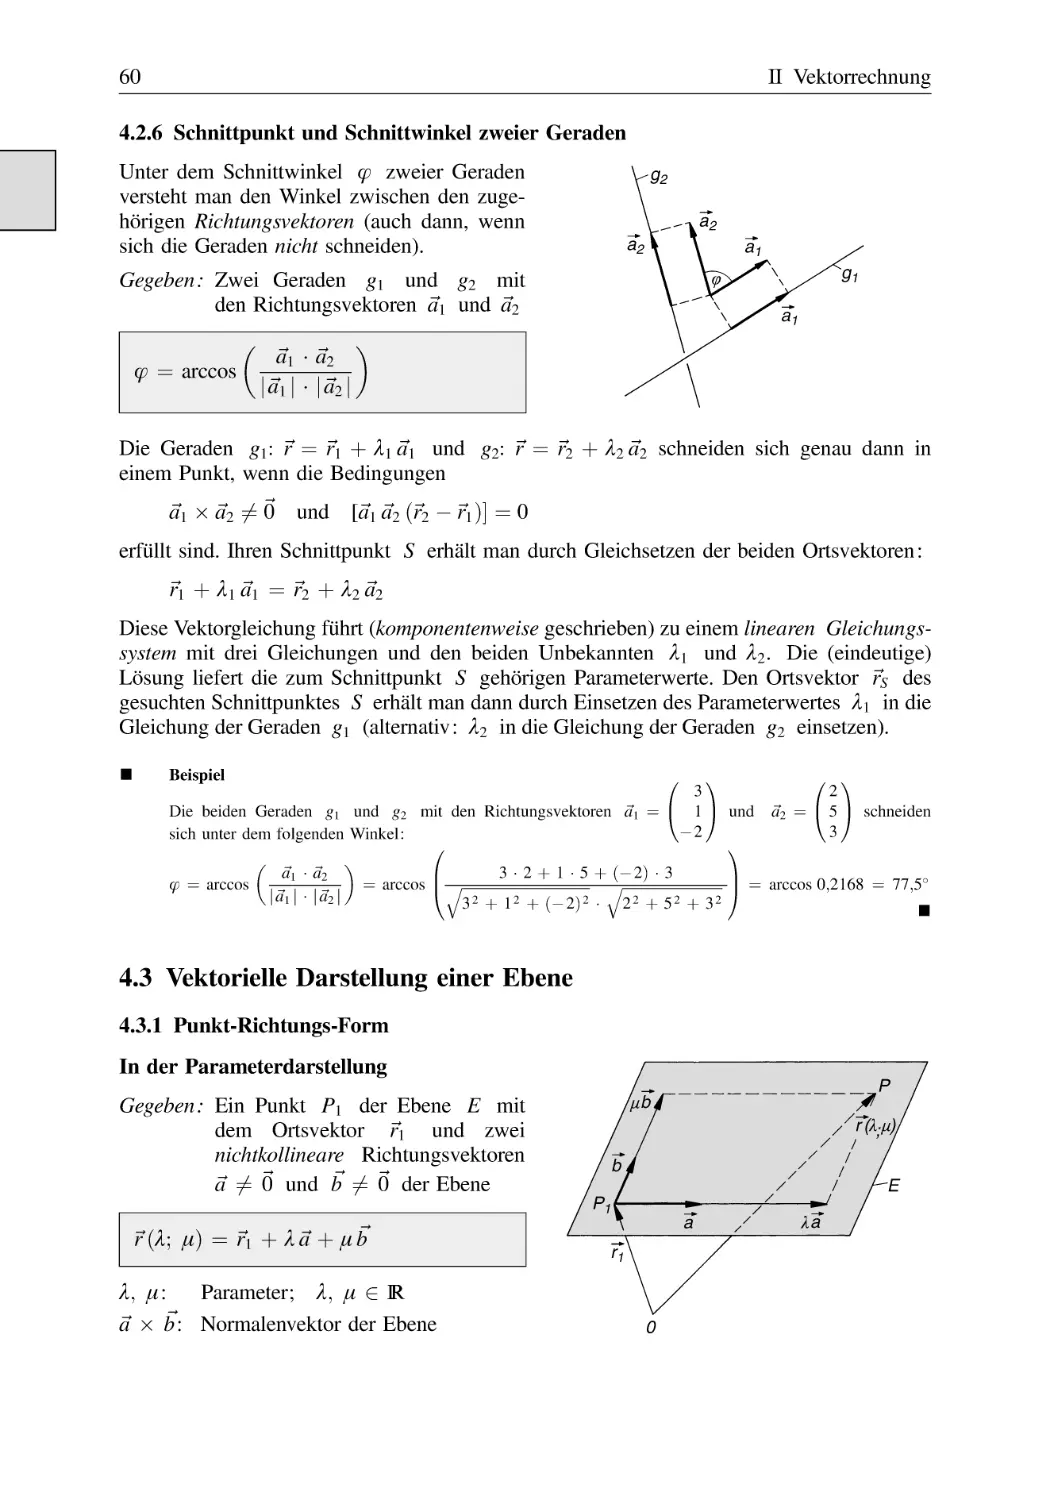 4.2.6 Schnittpunkt und Schnittwinkel zweier Geraden
4.3 Vektorielle Darstellung einer Ebene
4.3.1 Punkt-Richtungs-Form